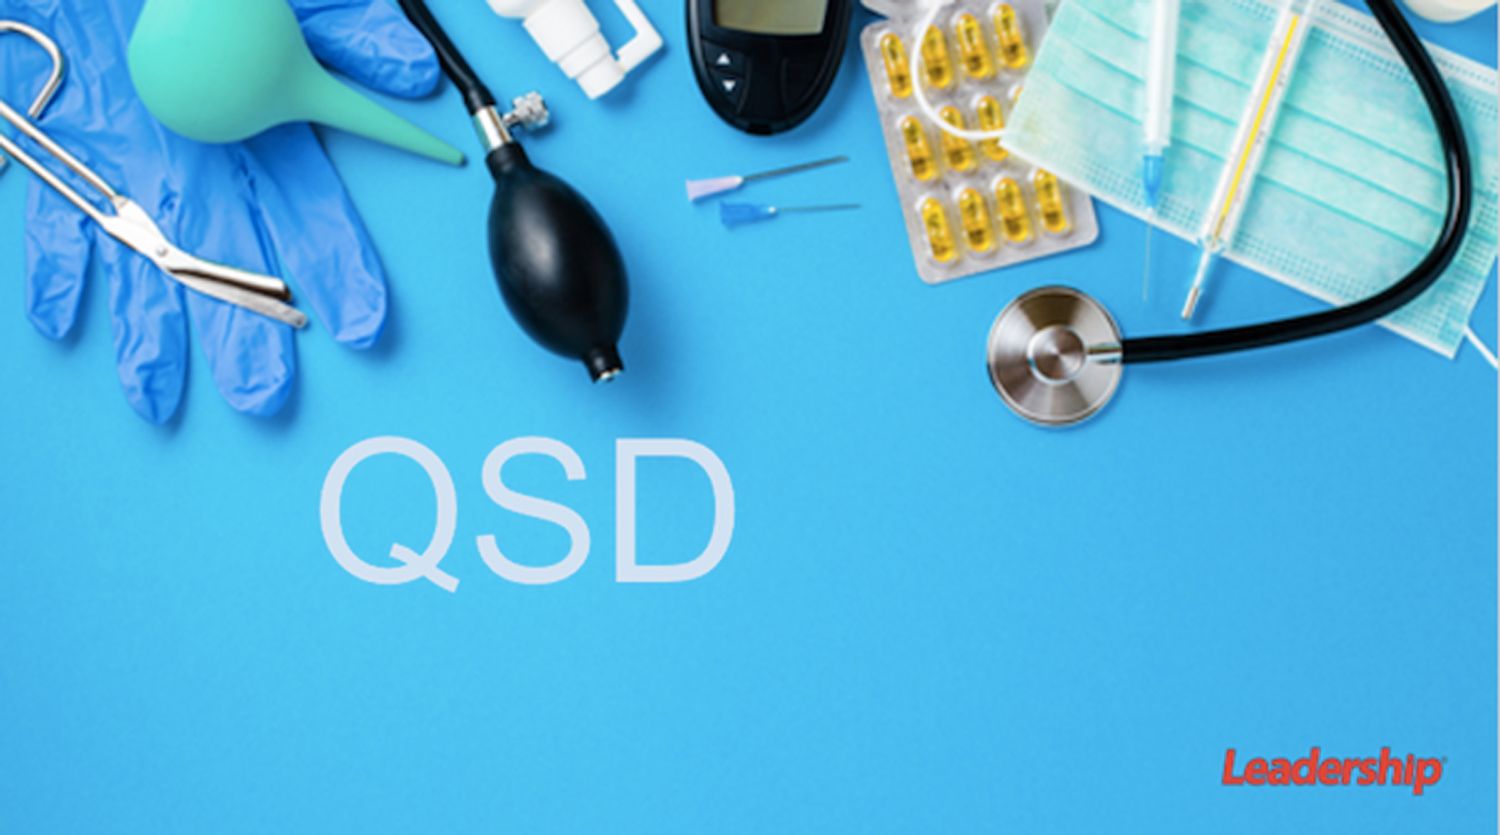 醫療器材進口商輸入文件(QSD)